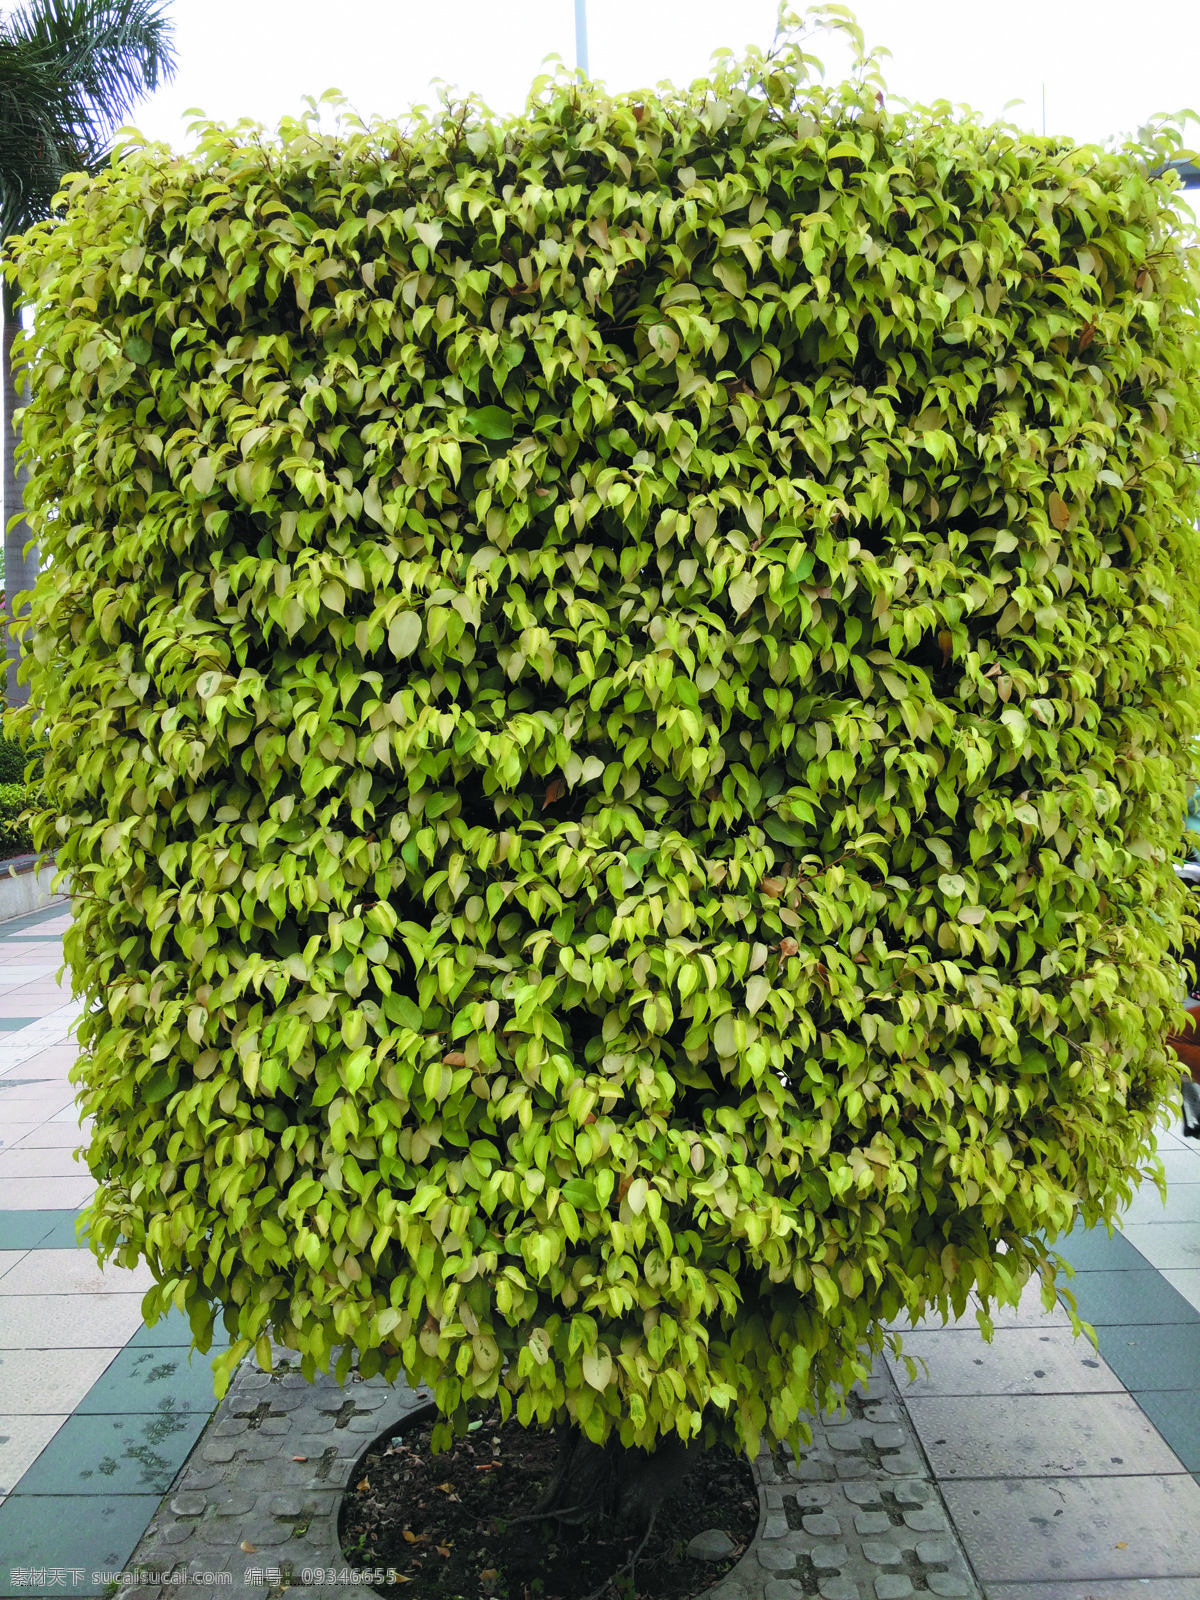 地砖 广场砖 小树 绿叶 绿化带 绿化 建筑园林 园林建筑 生物世界 树木树叶